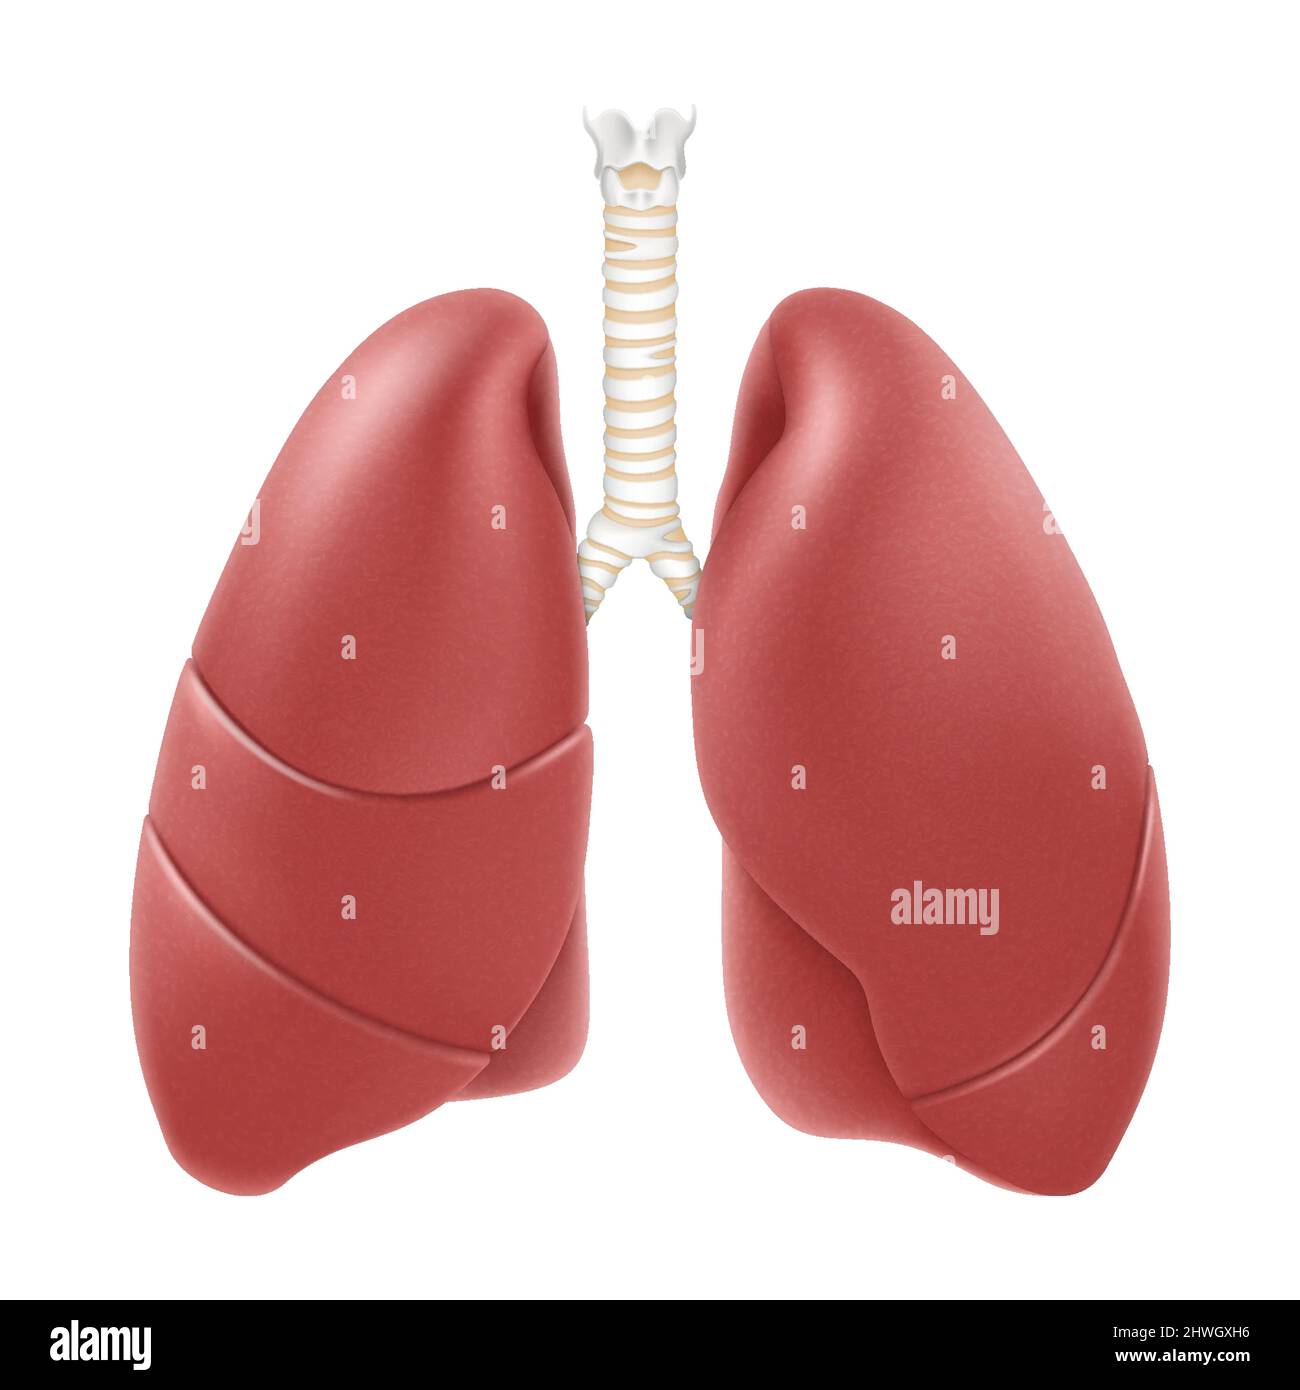 Anatomische Struktur der menschlichen Lunge. Realistische 3D-Vektor-Illustration isoliert auf weißem Hintergrund. Vorderansicht im Detail. Rechte und linke Lunge mit Trachea. Stock Vektor